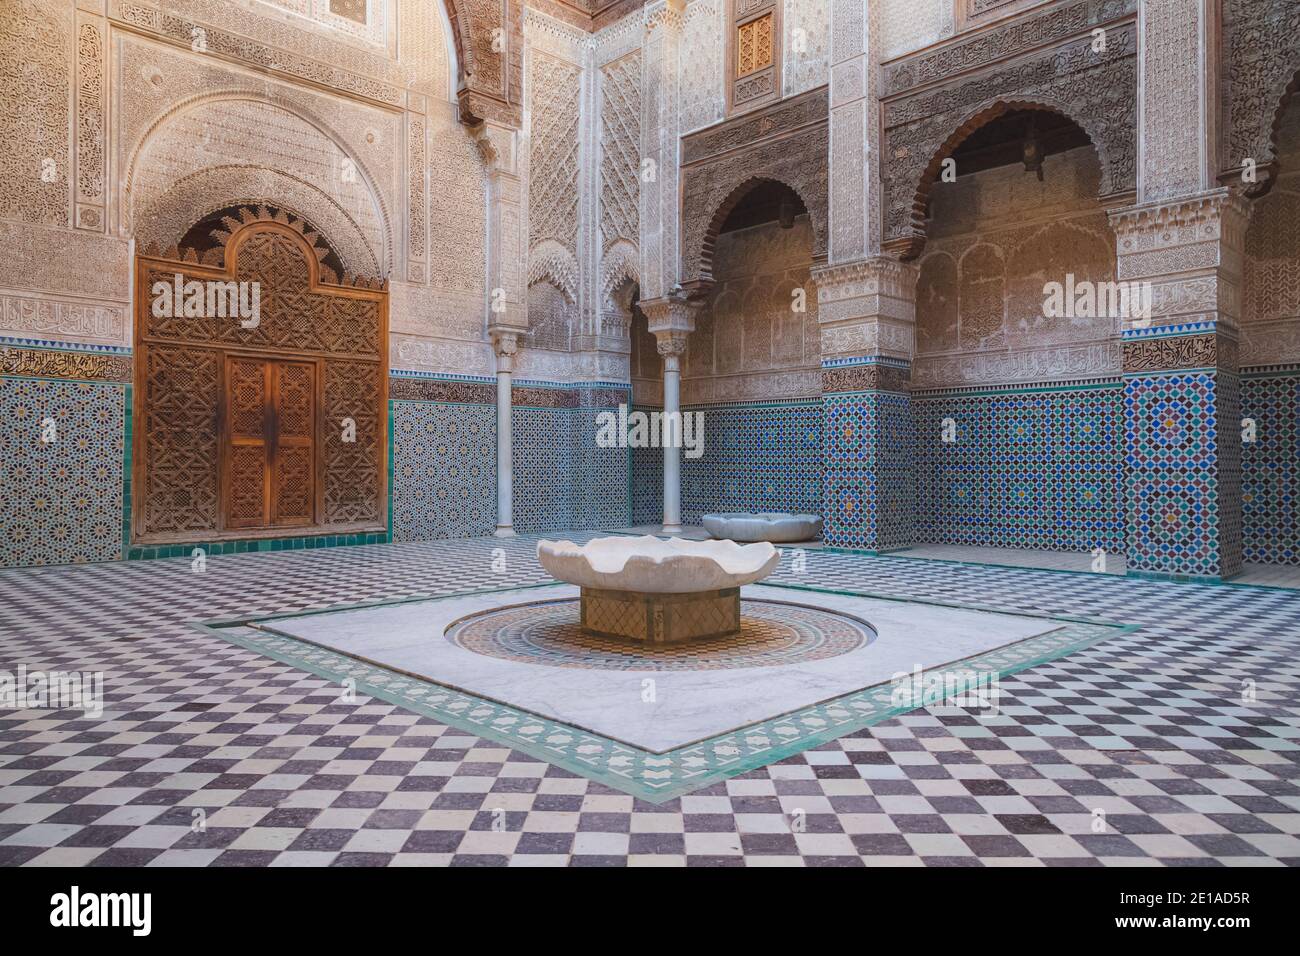 Fès, Maroc - novembre 26 2015 : la cour intérieure de cette ancienne Al-Attarine Madrasa du XIVe siècle dans la médina de Fès, Maroc. Banque D'Images